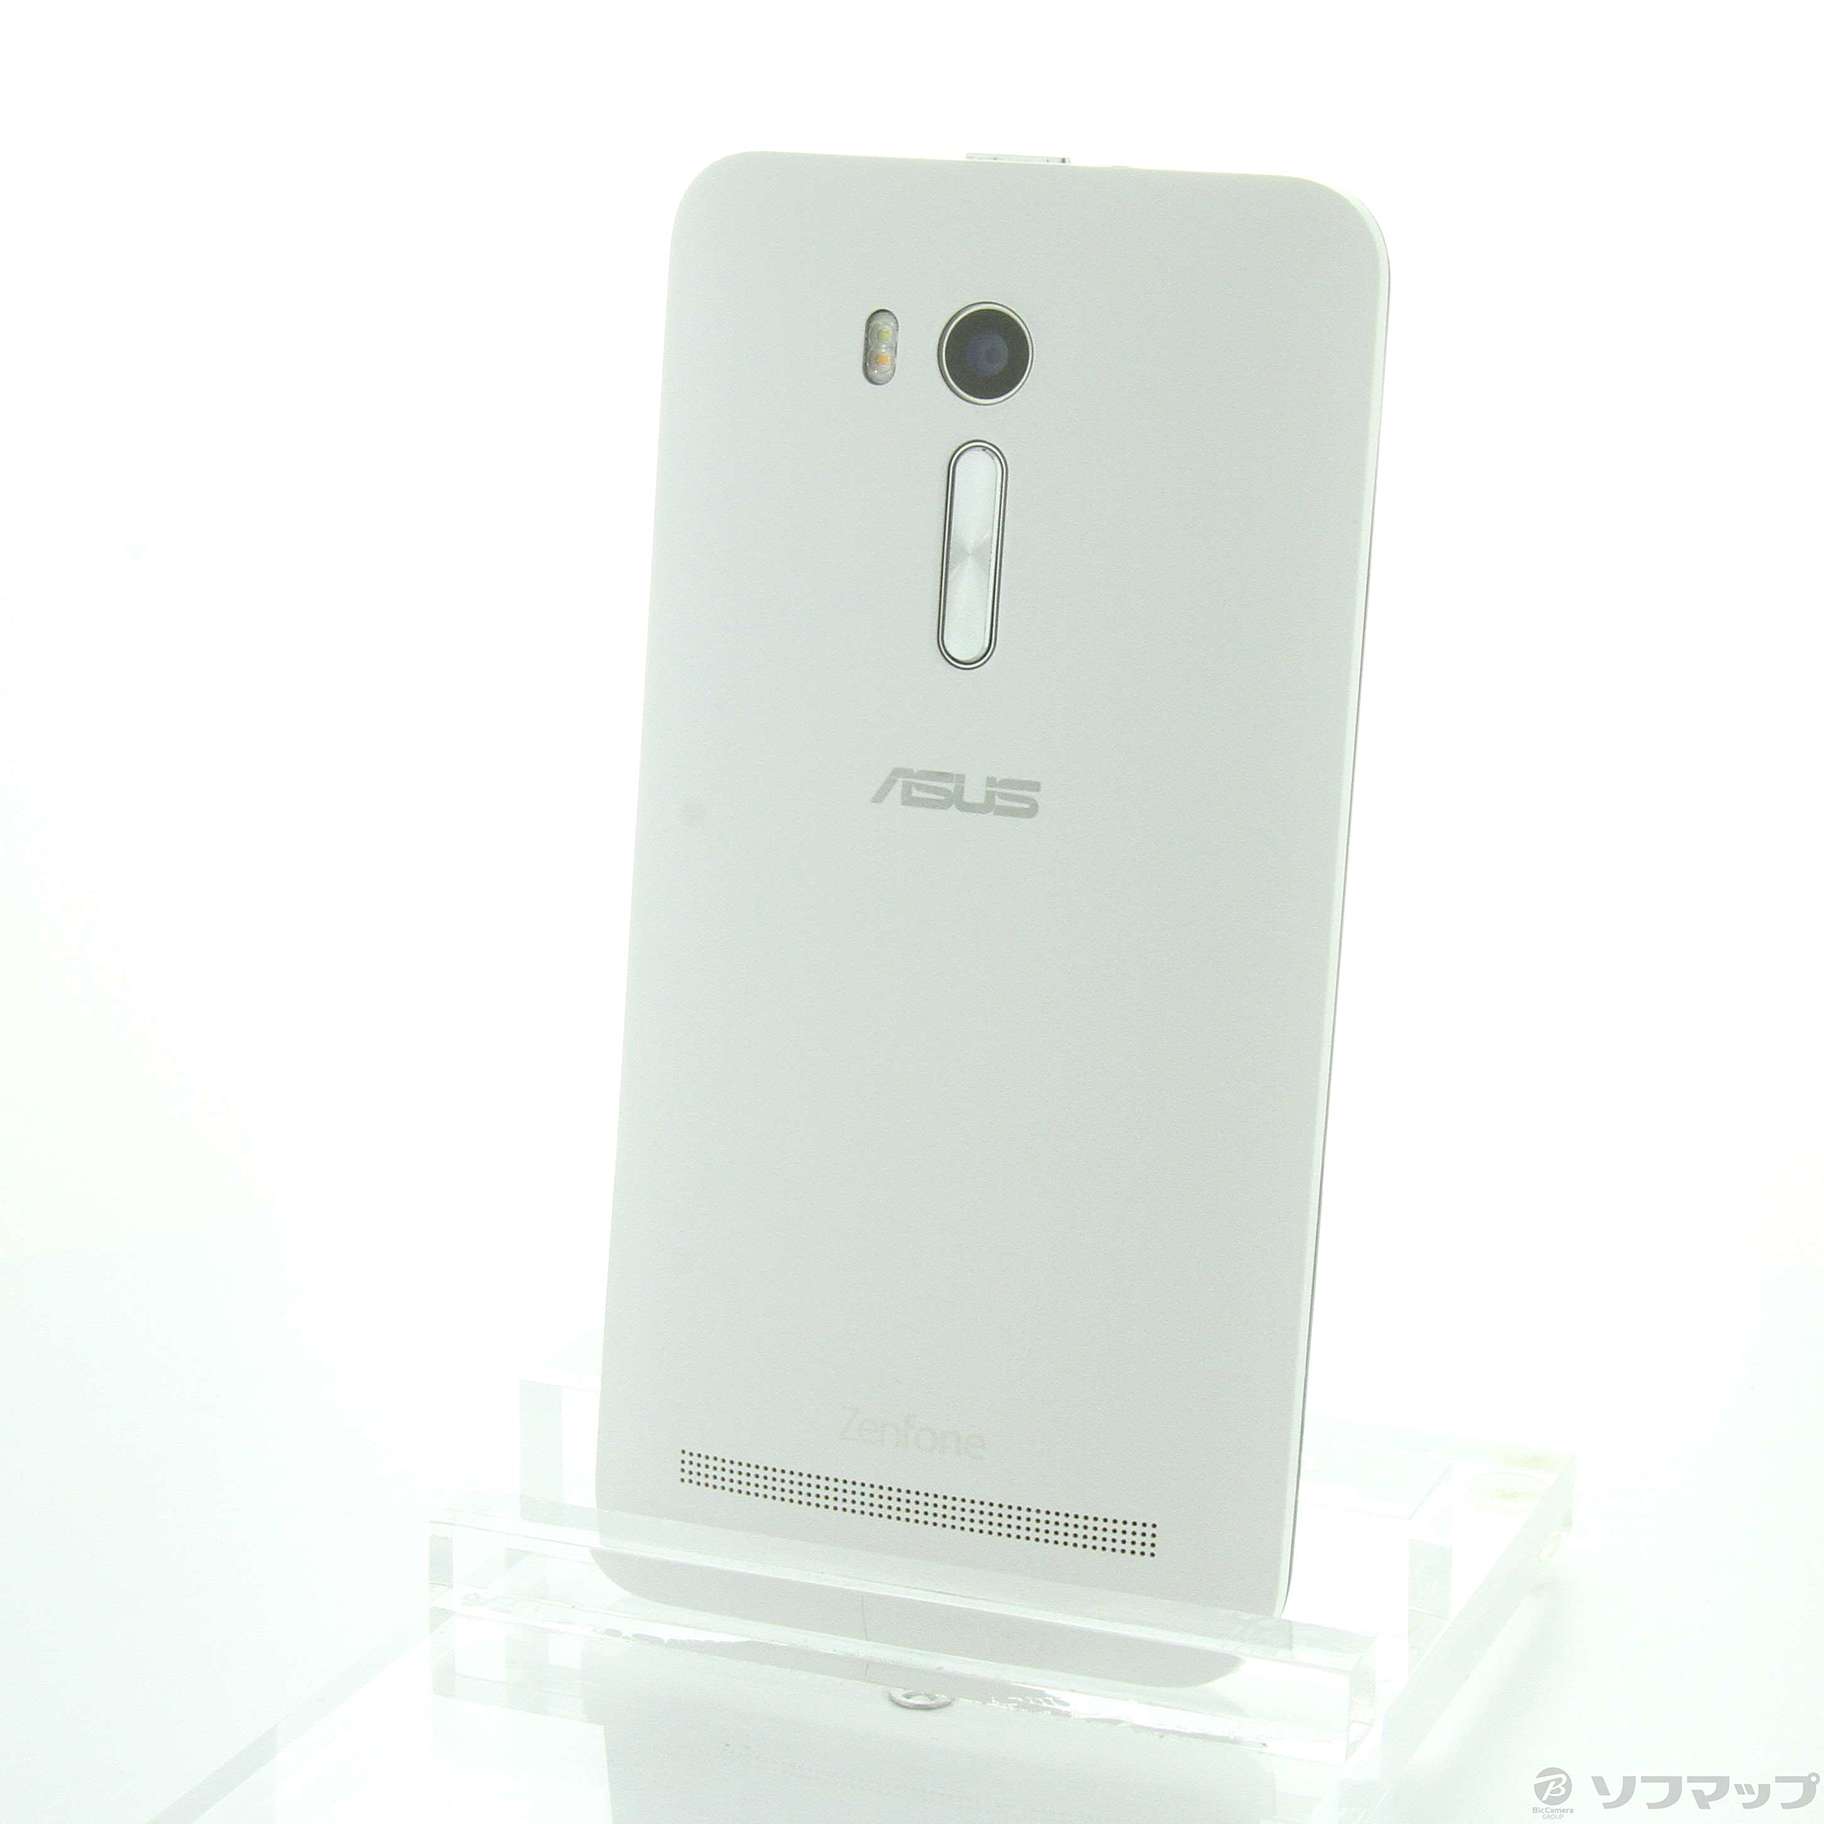 中古】ZenFone Go 16GB ホワイト ZB551KL-WH16 SIMフリー